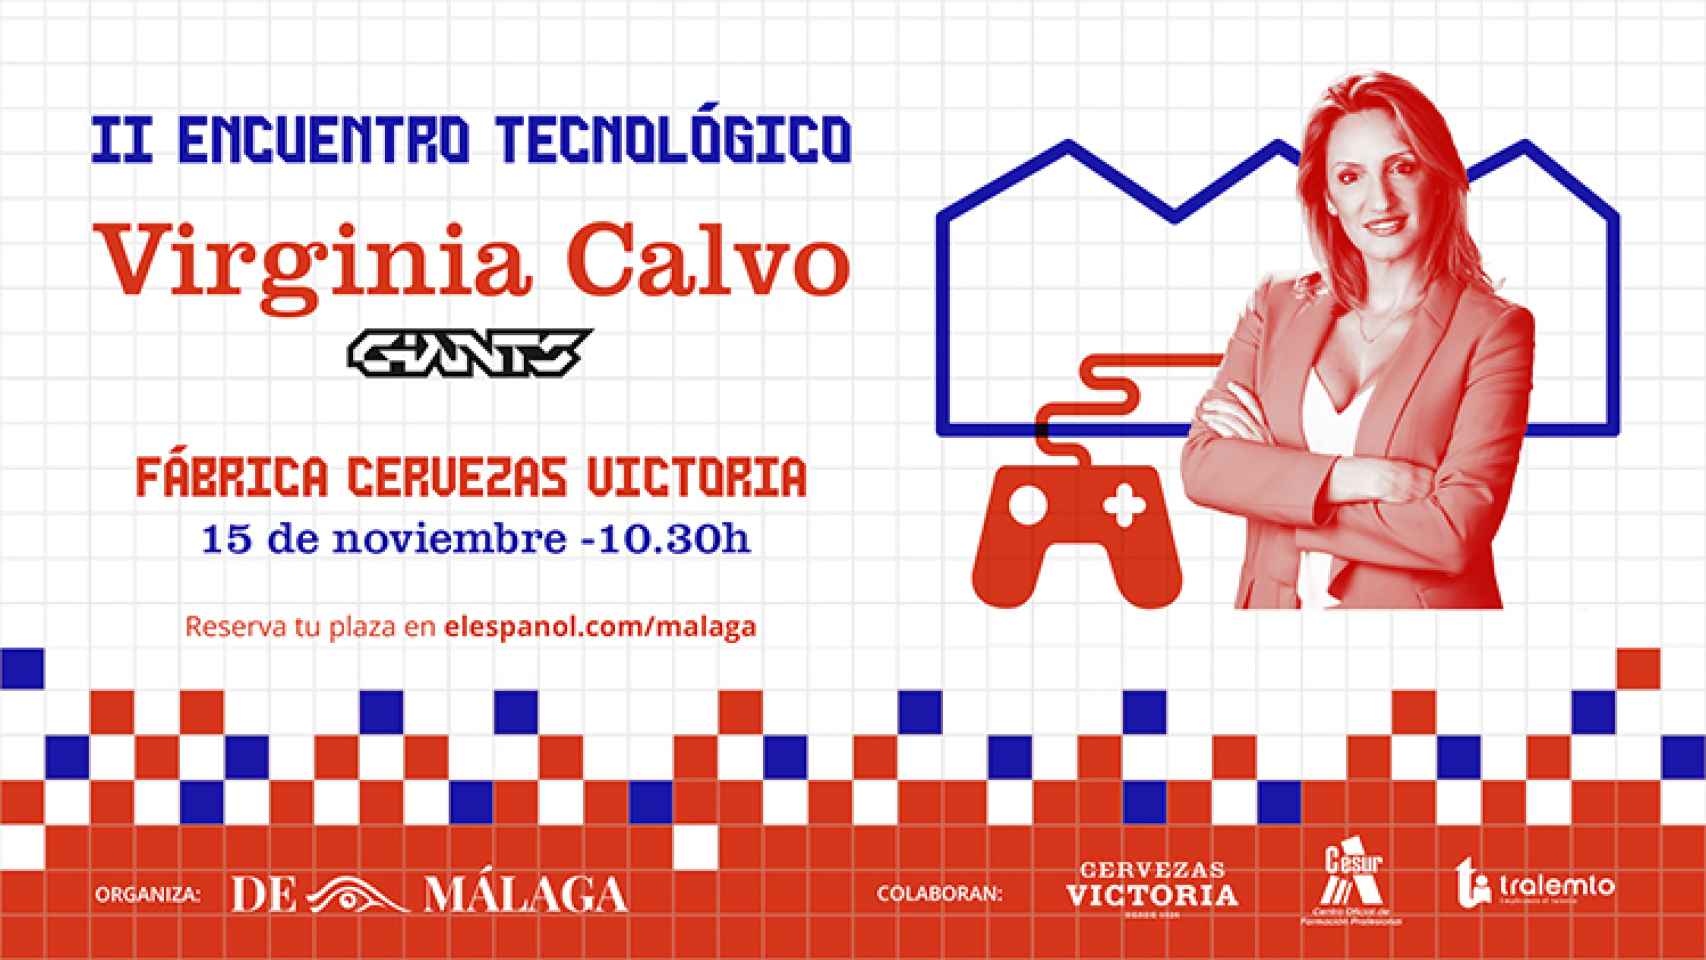 Virginia Calvo (Giants), protagonista del II Encuentro Tecnológico de EL ESPAÑOL de Málaga